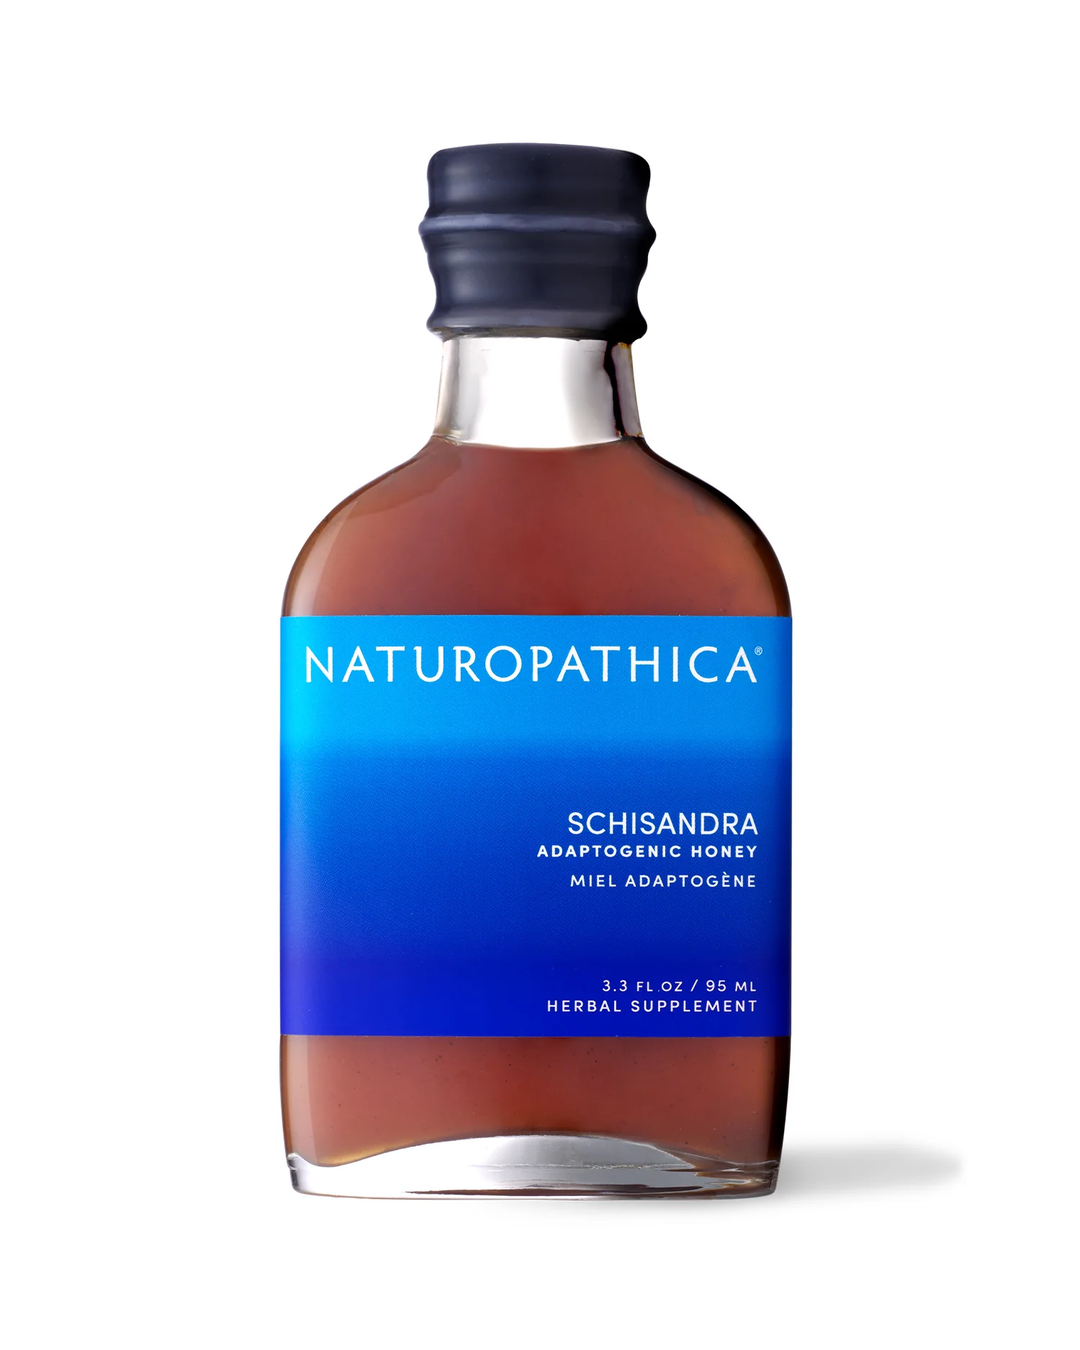 Naturopathica Schisandra Adaptogenic Honey